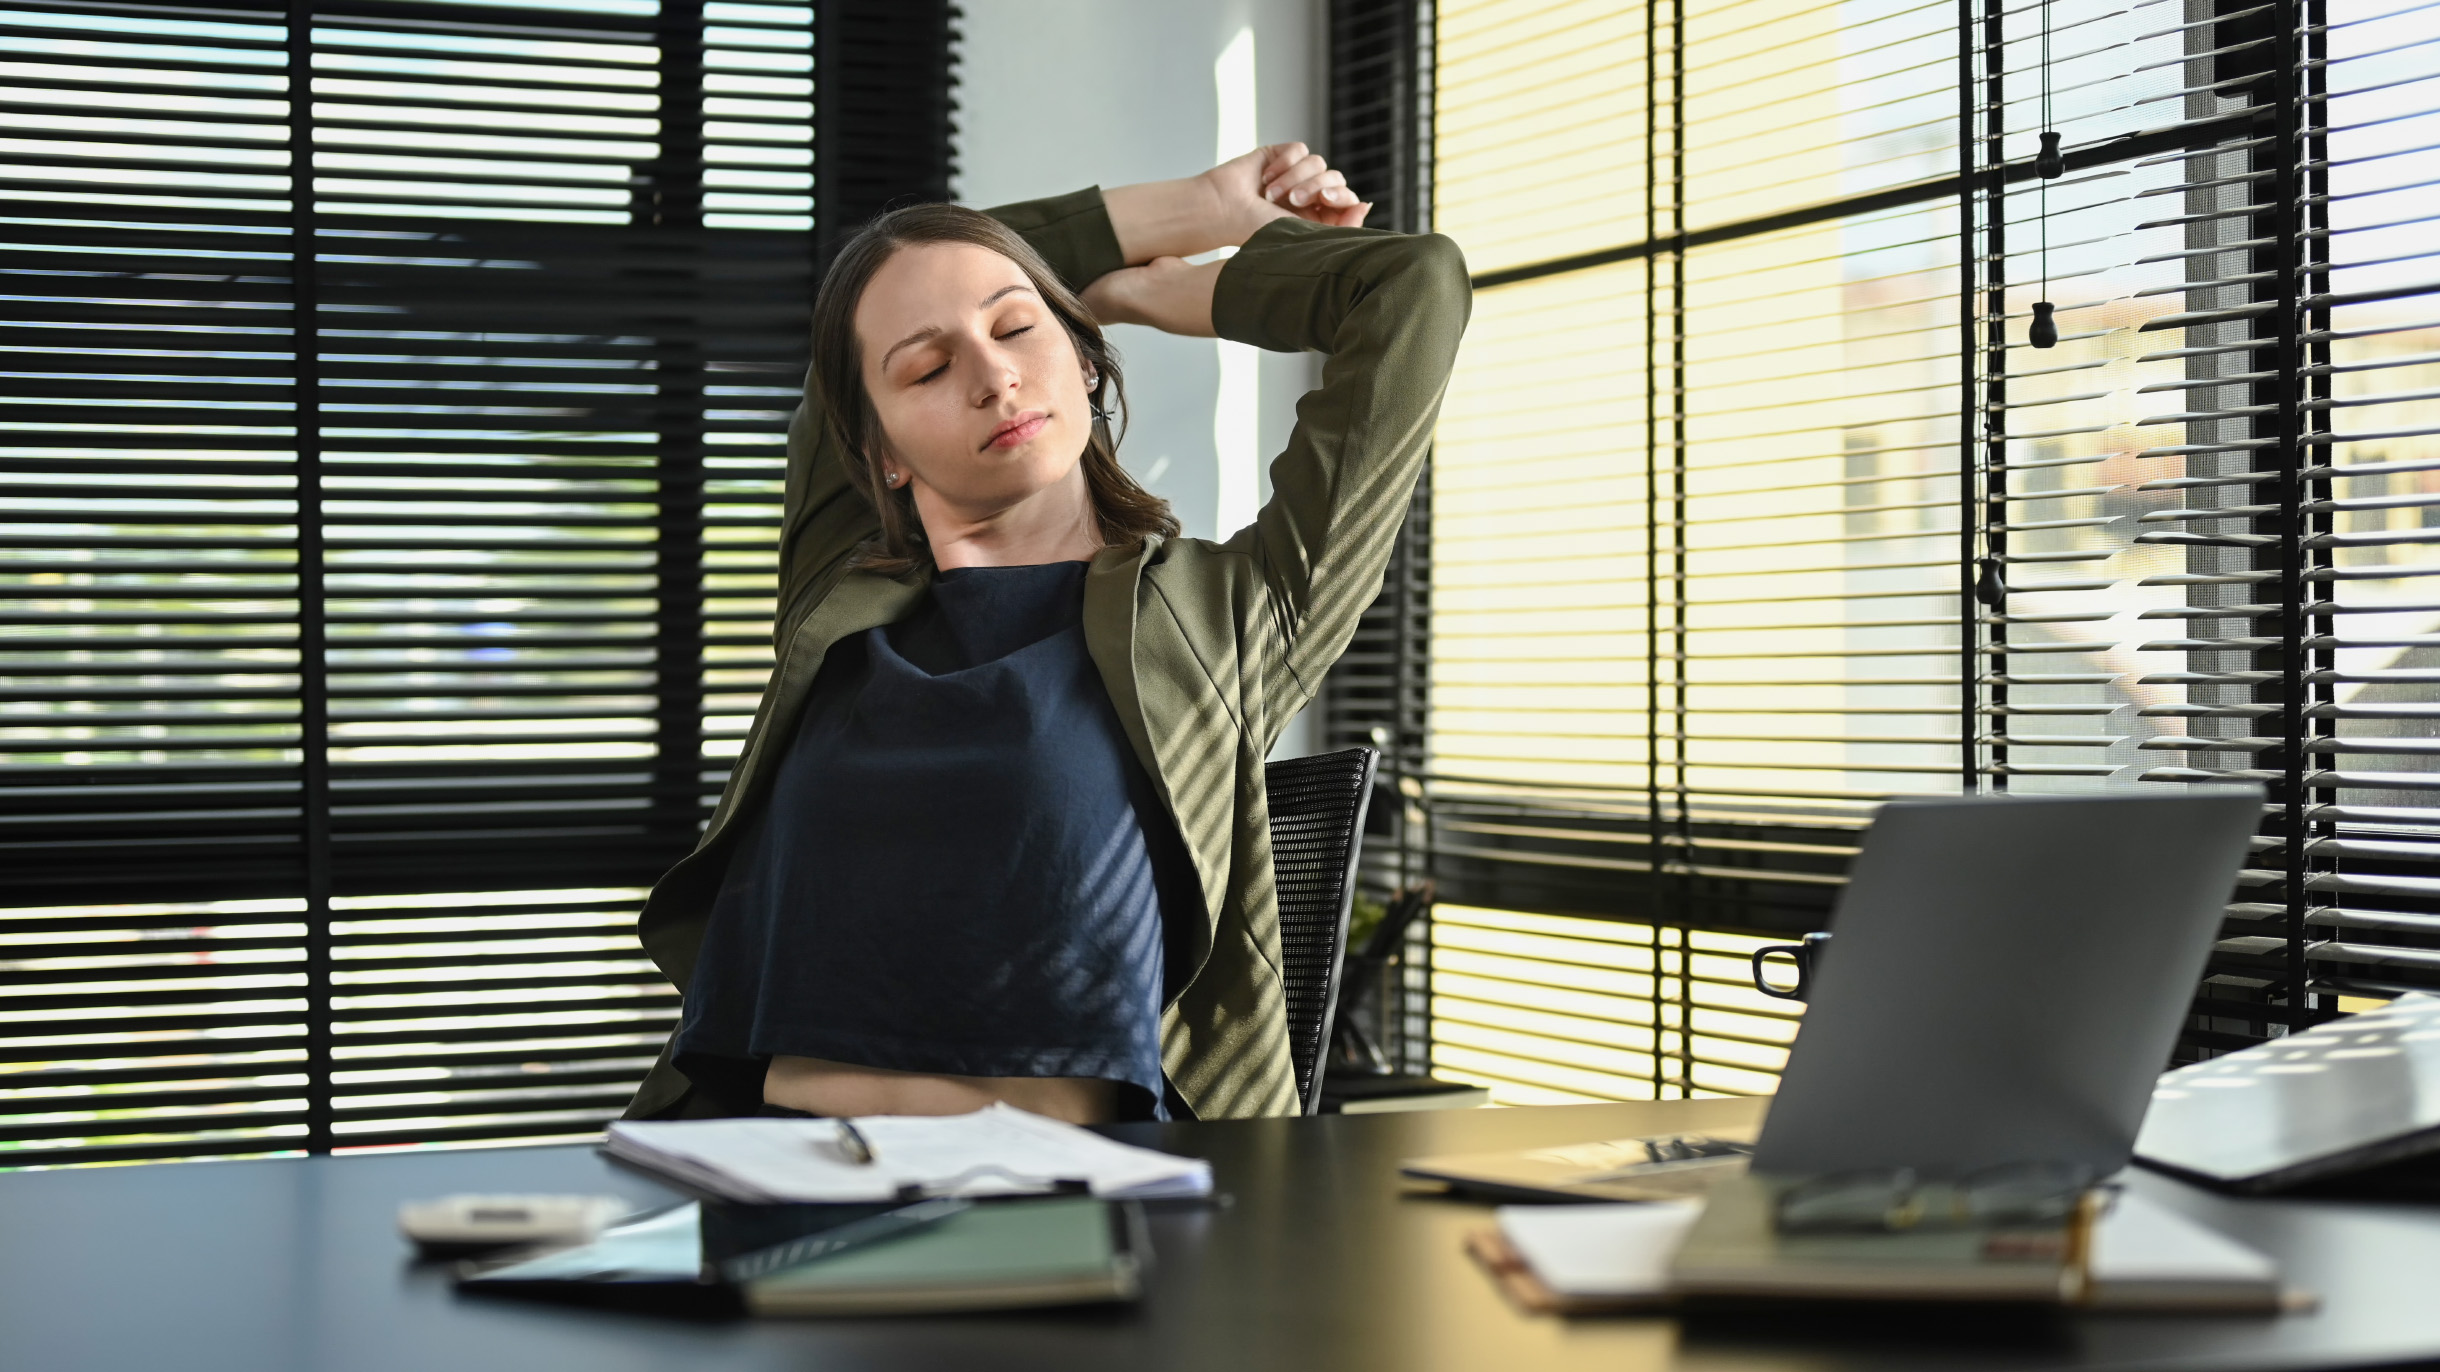 Как размяться в офисе: 9 упражнений, которые помогут при сидячей работе